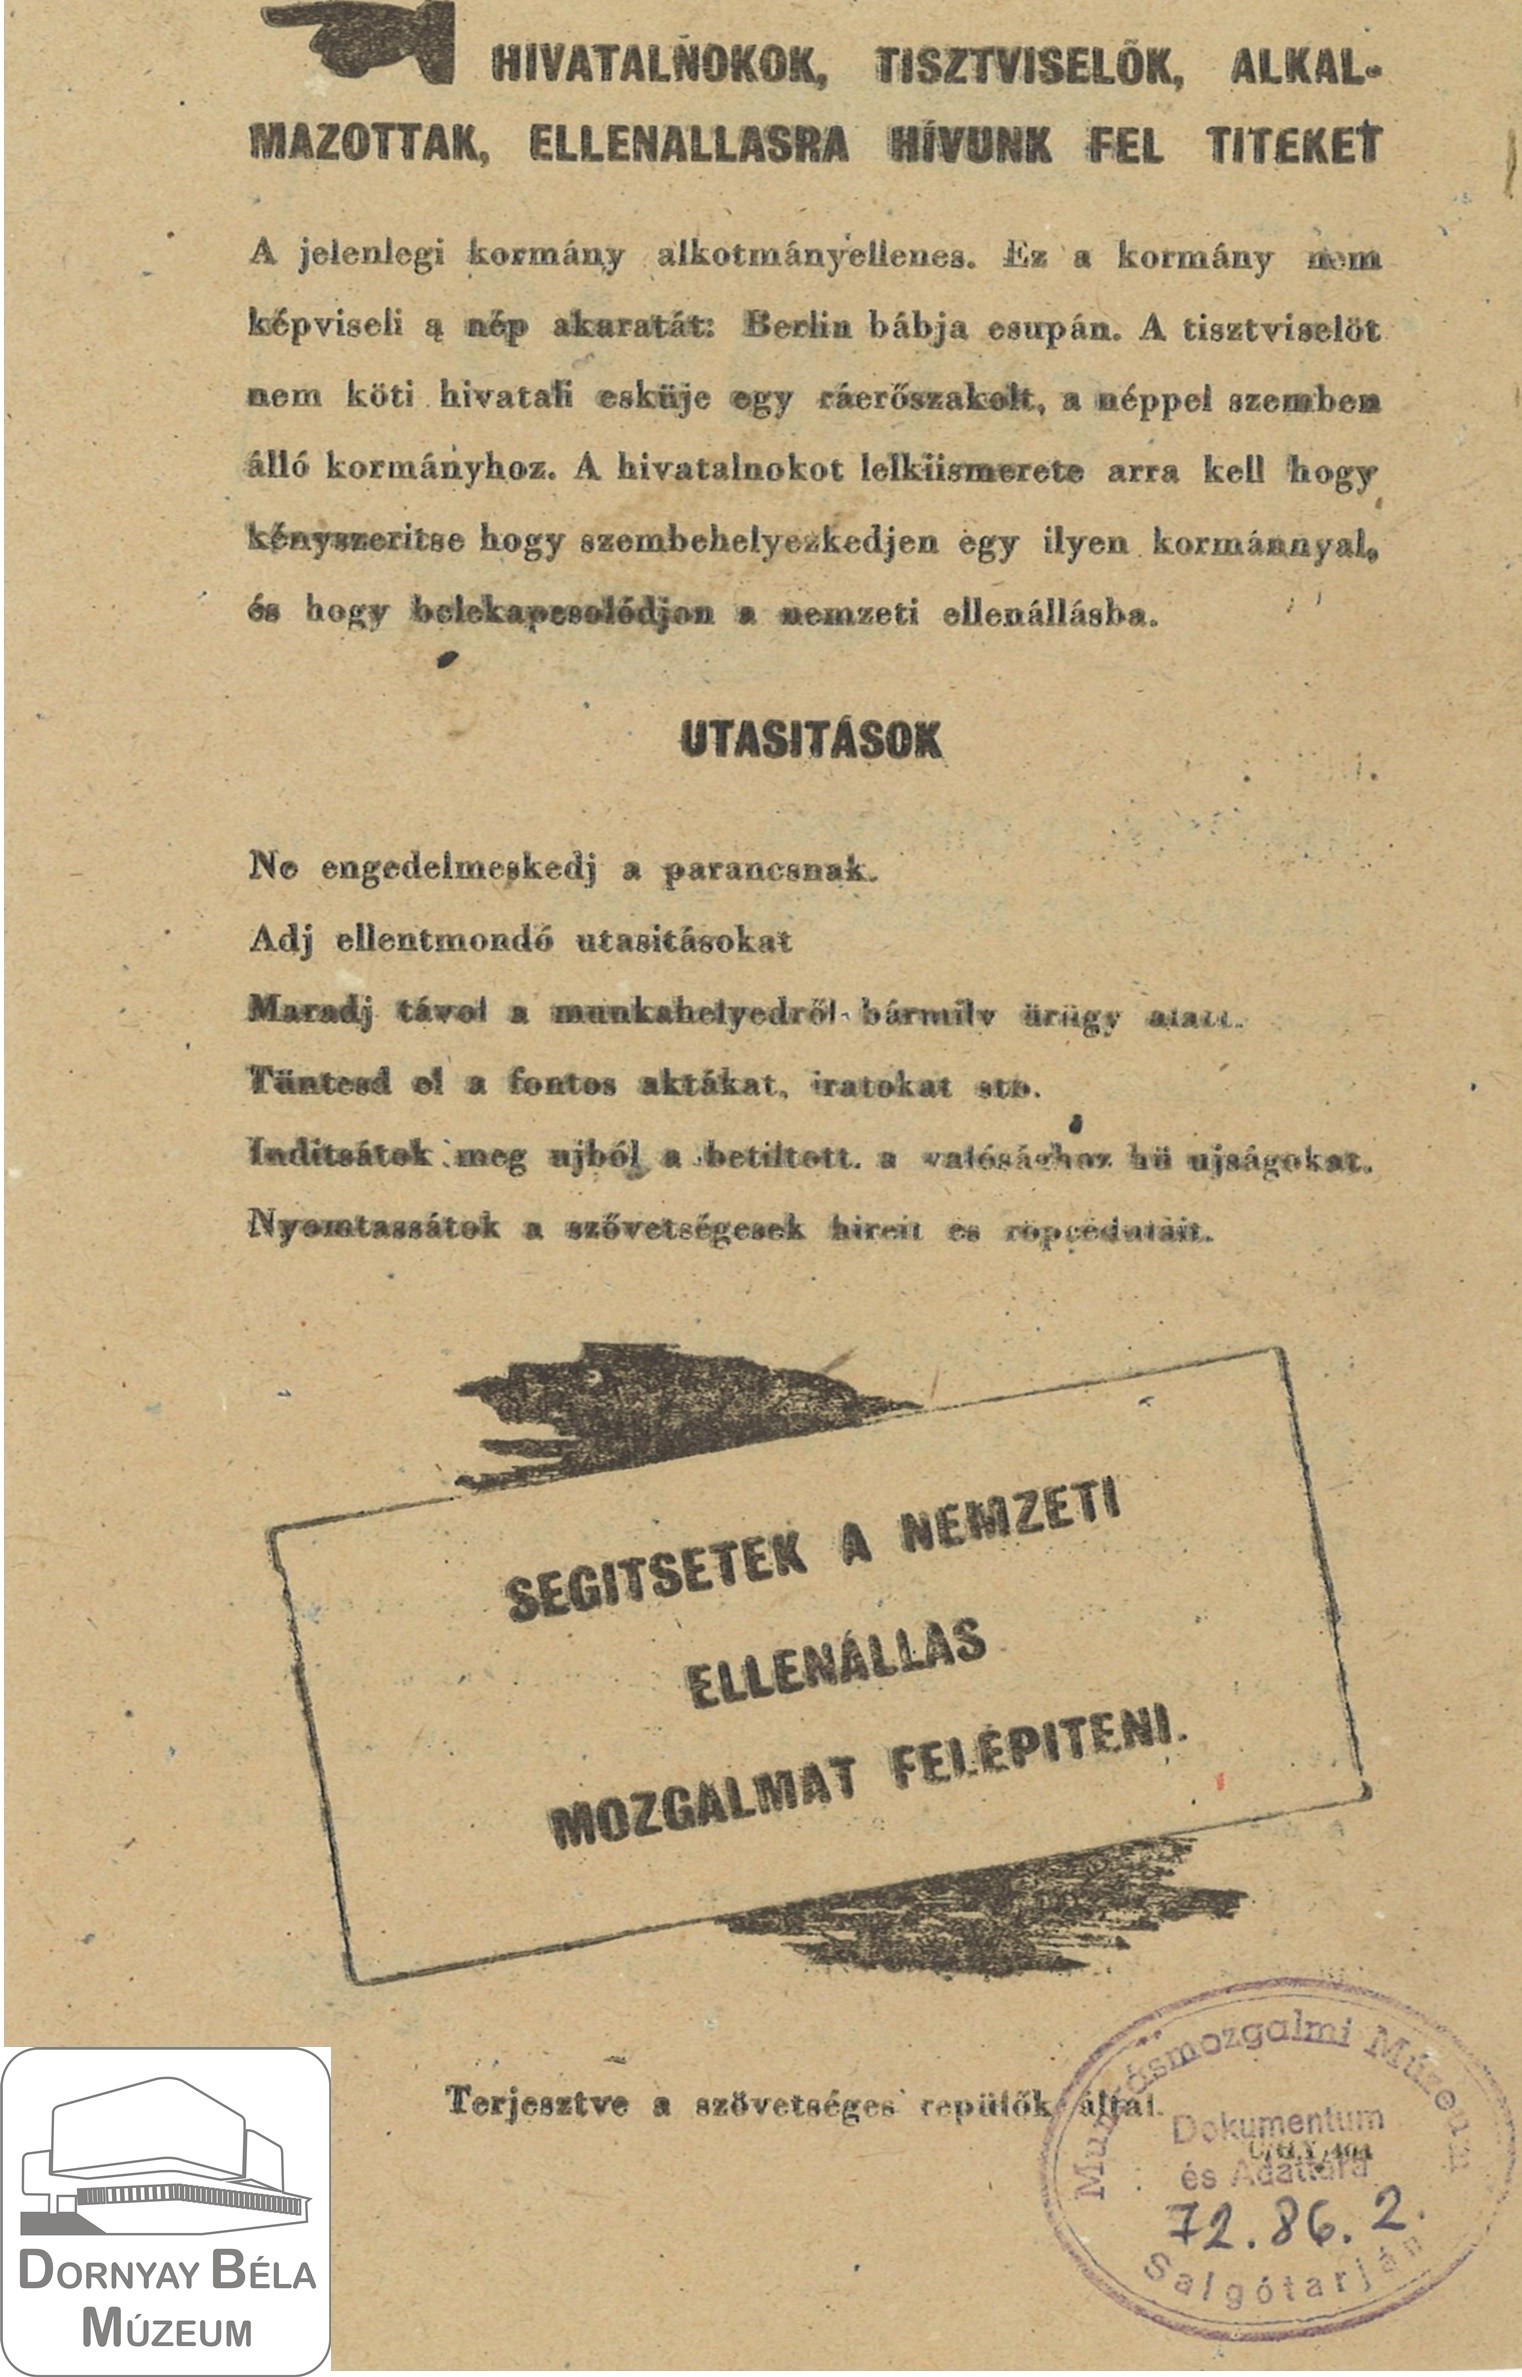 A szövetséges hatalmak felhívása a nemzeti ellenállási mozgalom megszervezésére. (Dornyay Béla Múzeum, Salgótarján CC BY-NC-SA)